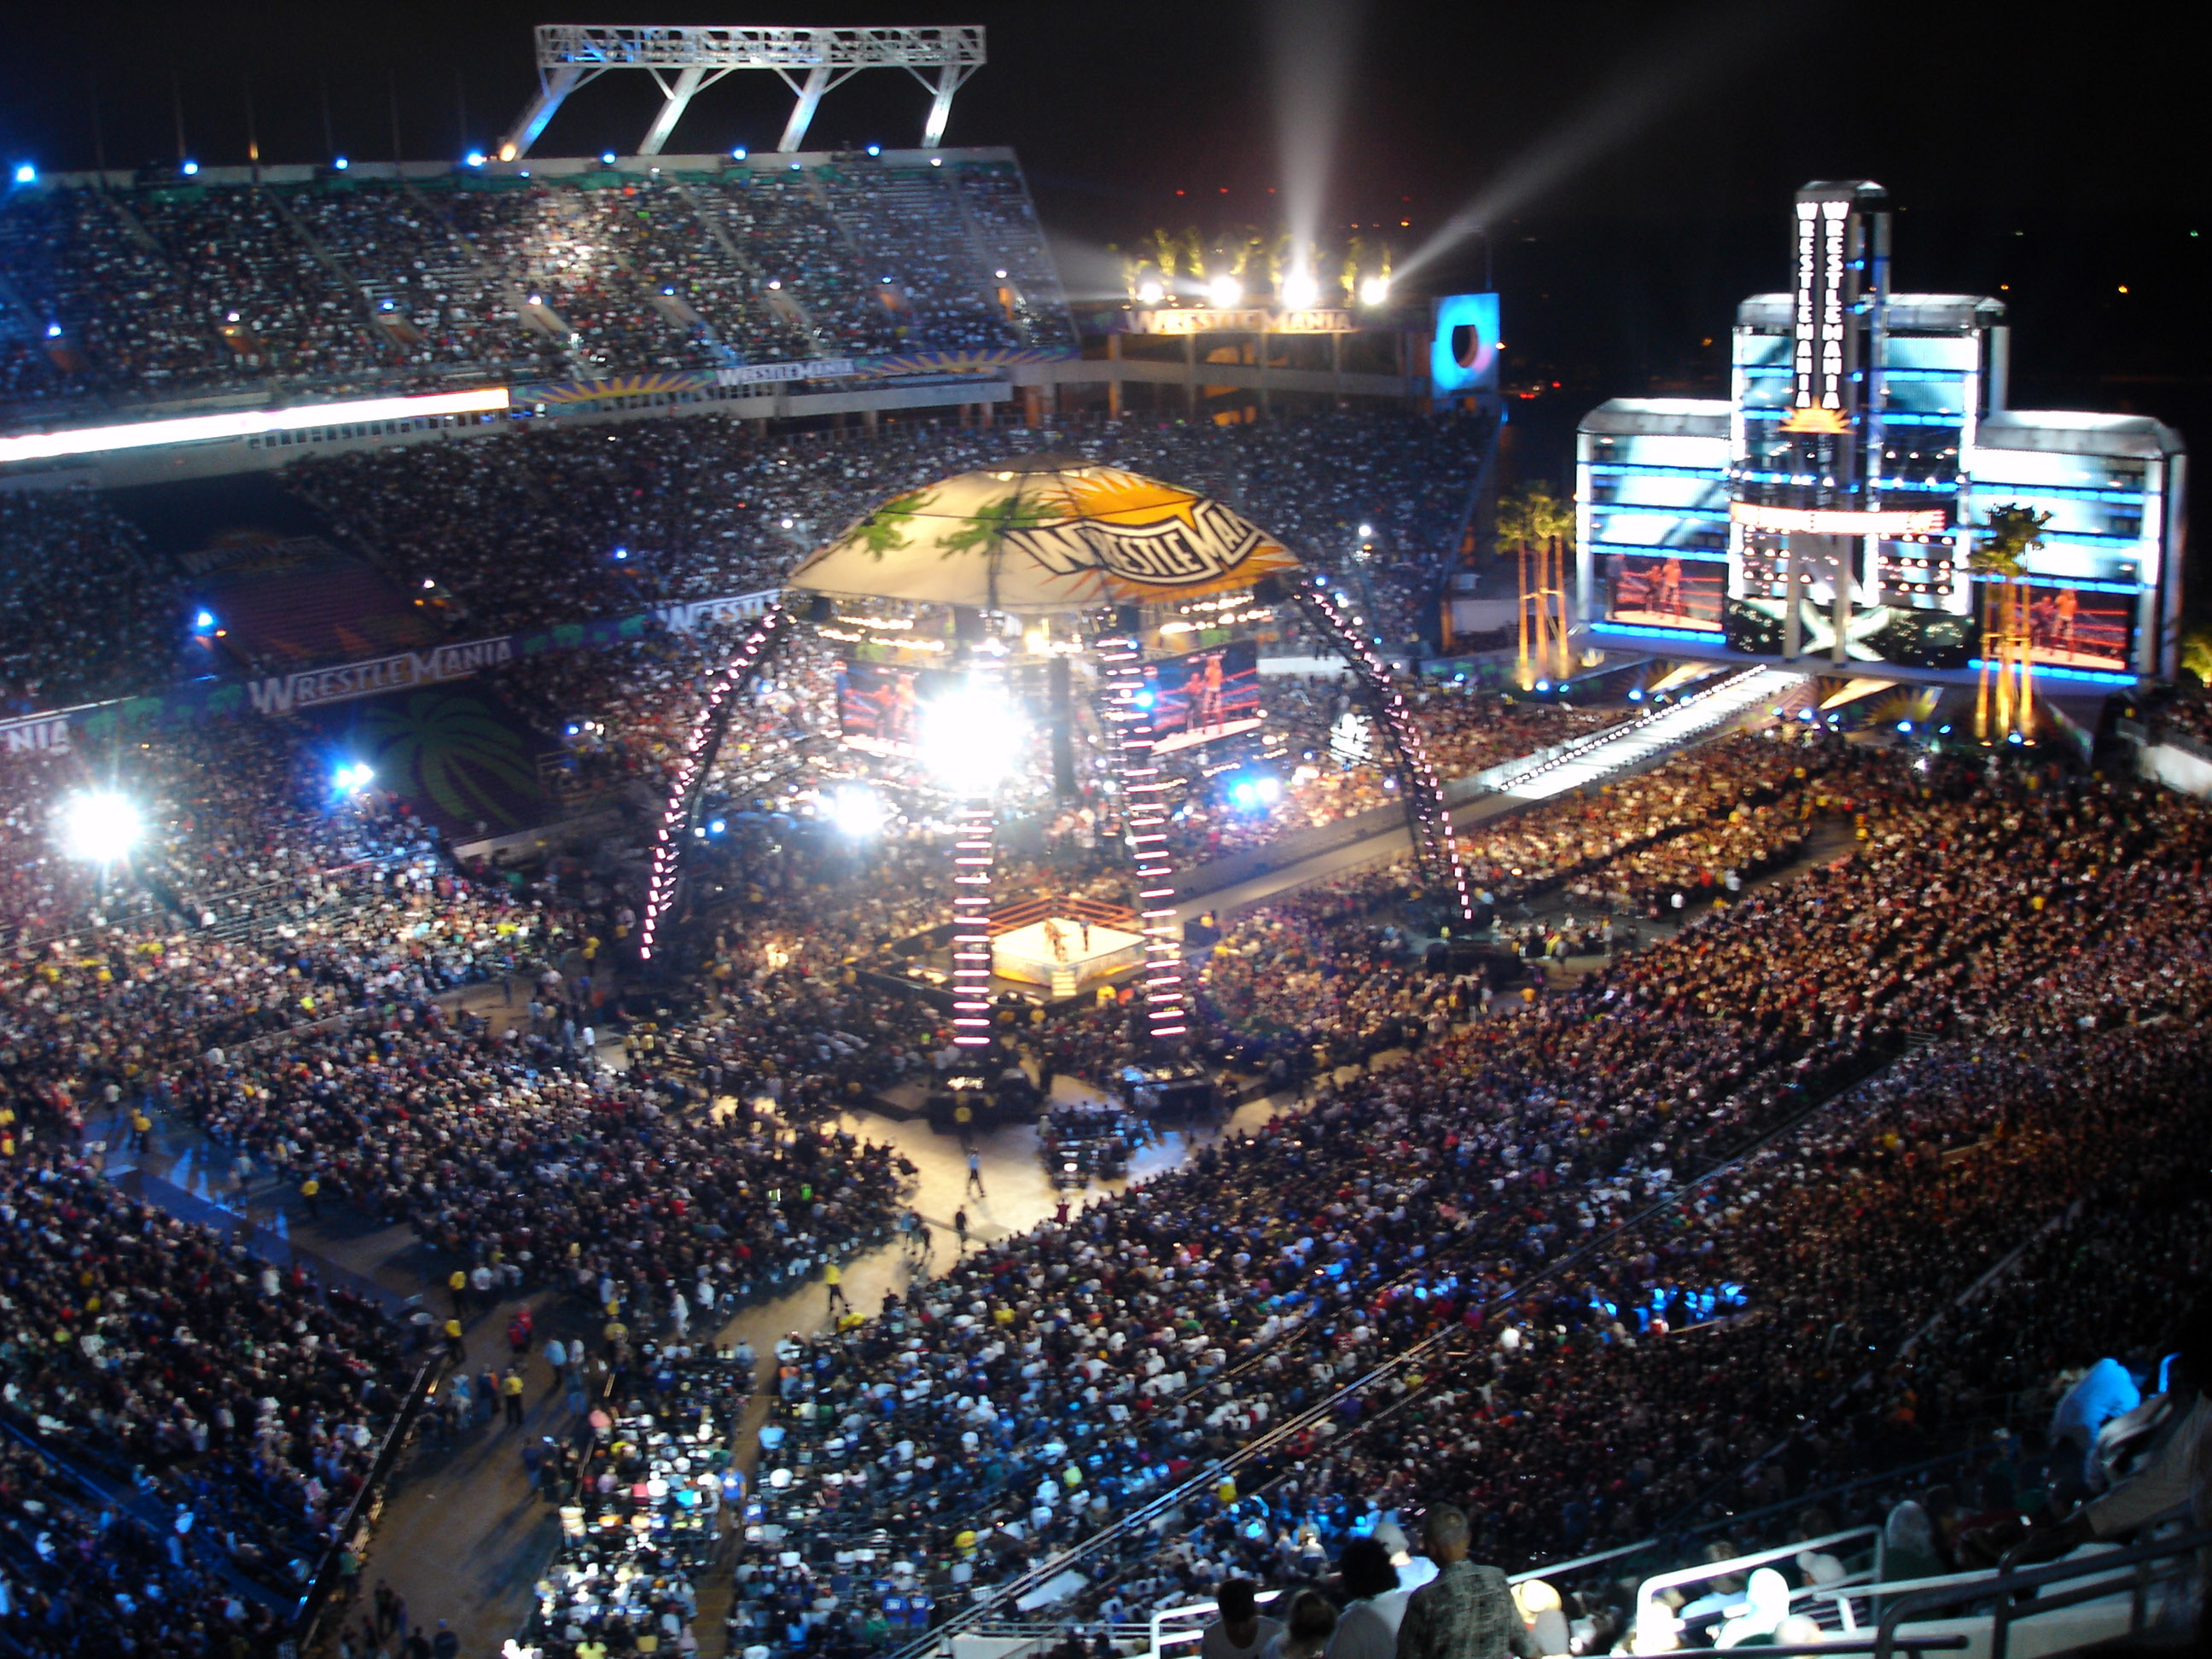 Camping World Stadium during WrestleMania XXIV in Orlando, Florida image - Free  stock photo - Public Domain photo - CC0 Images